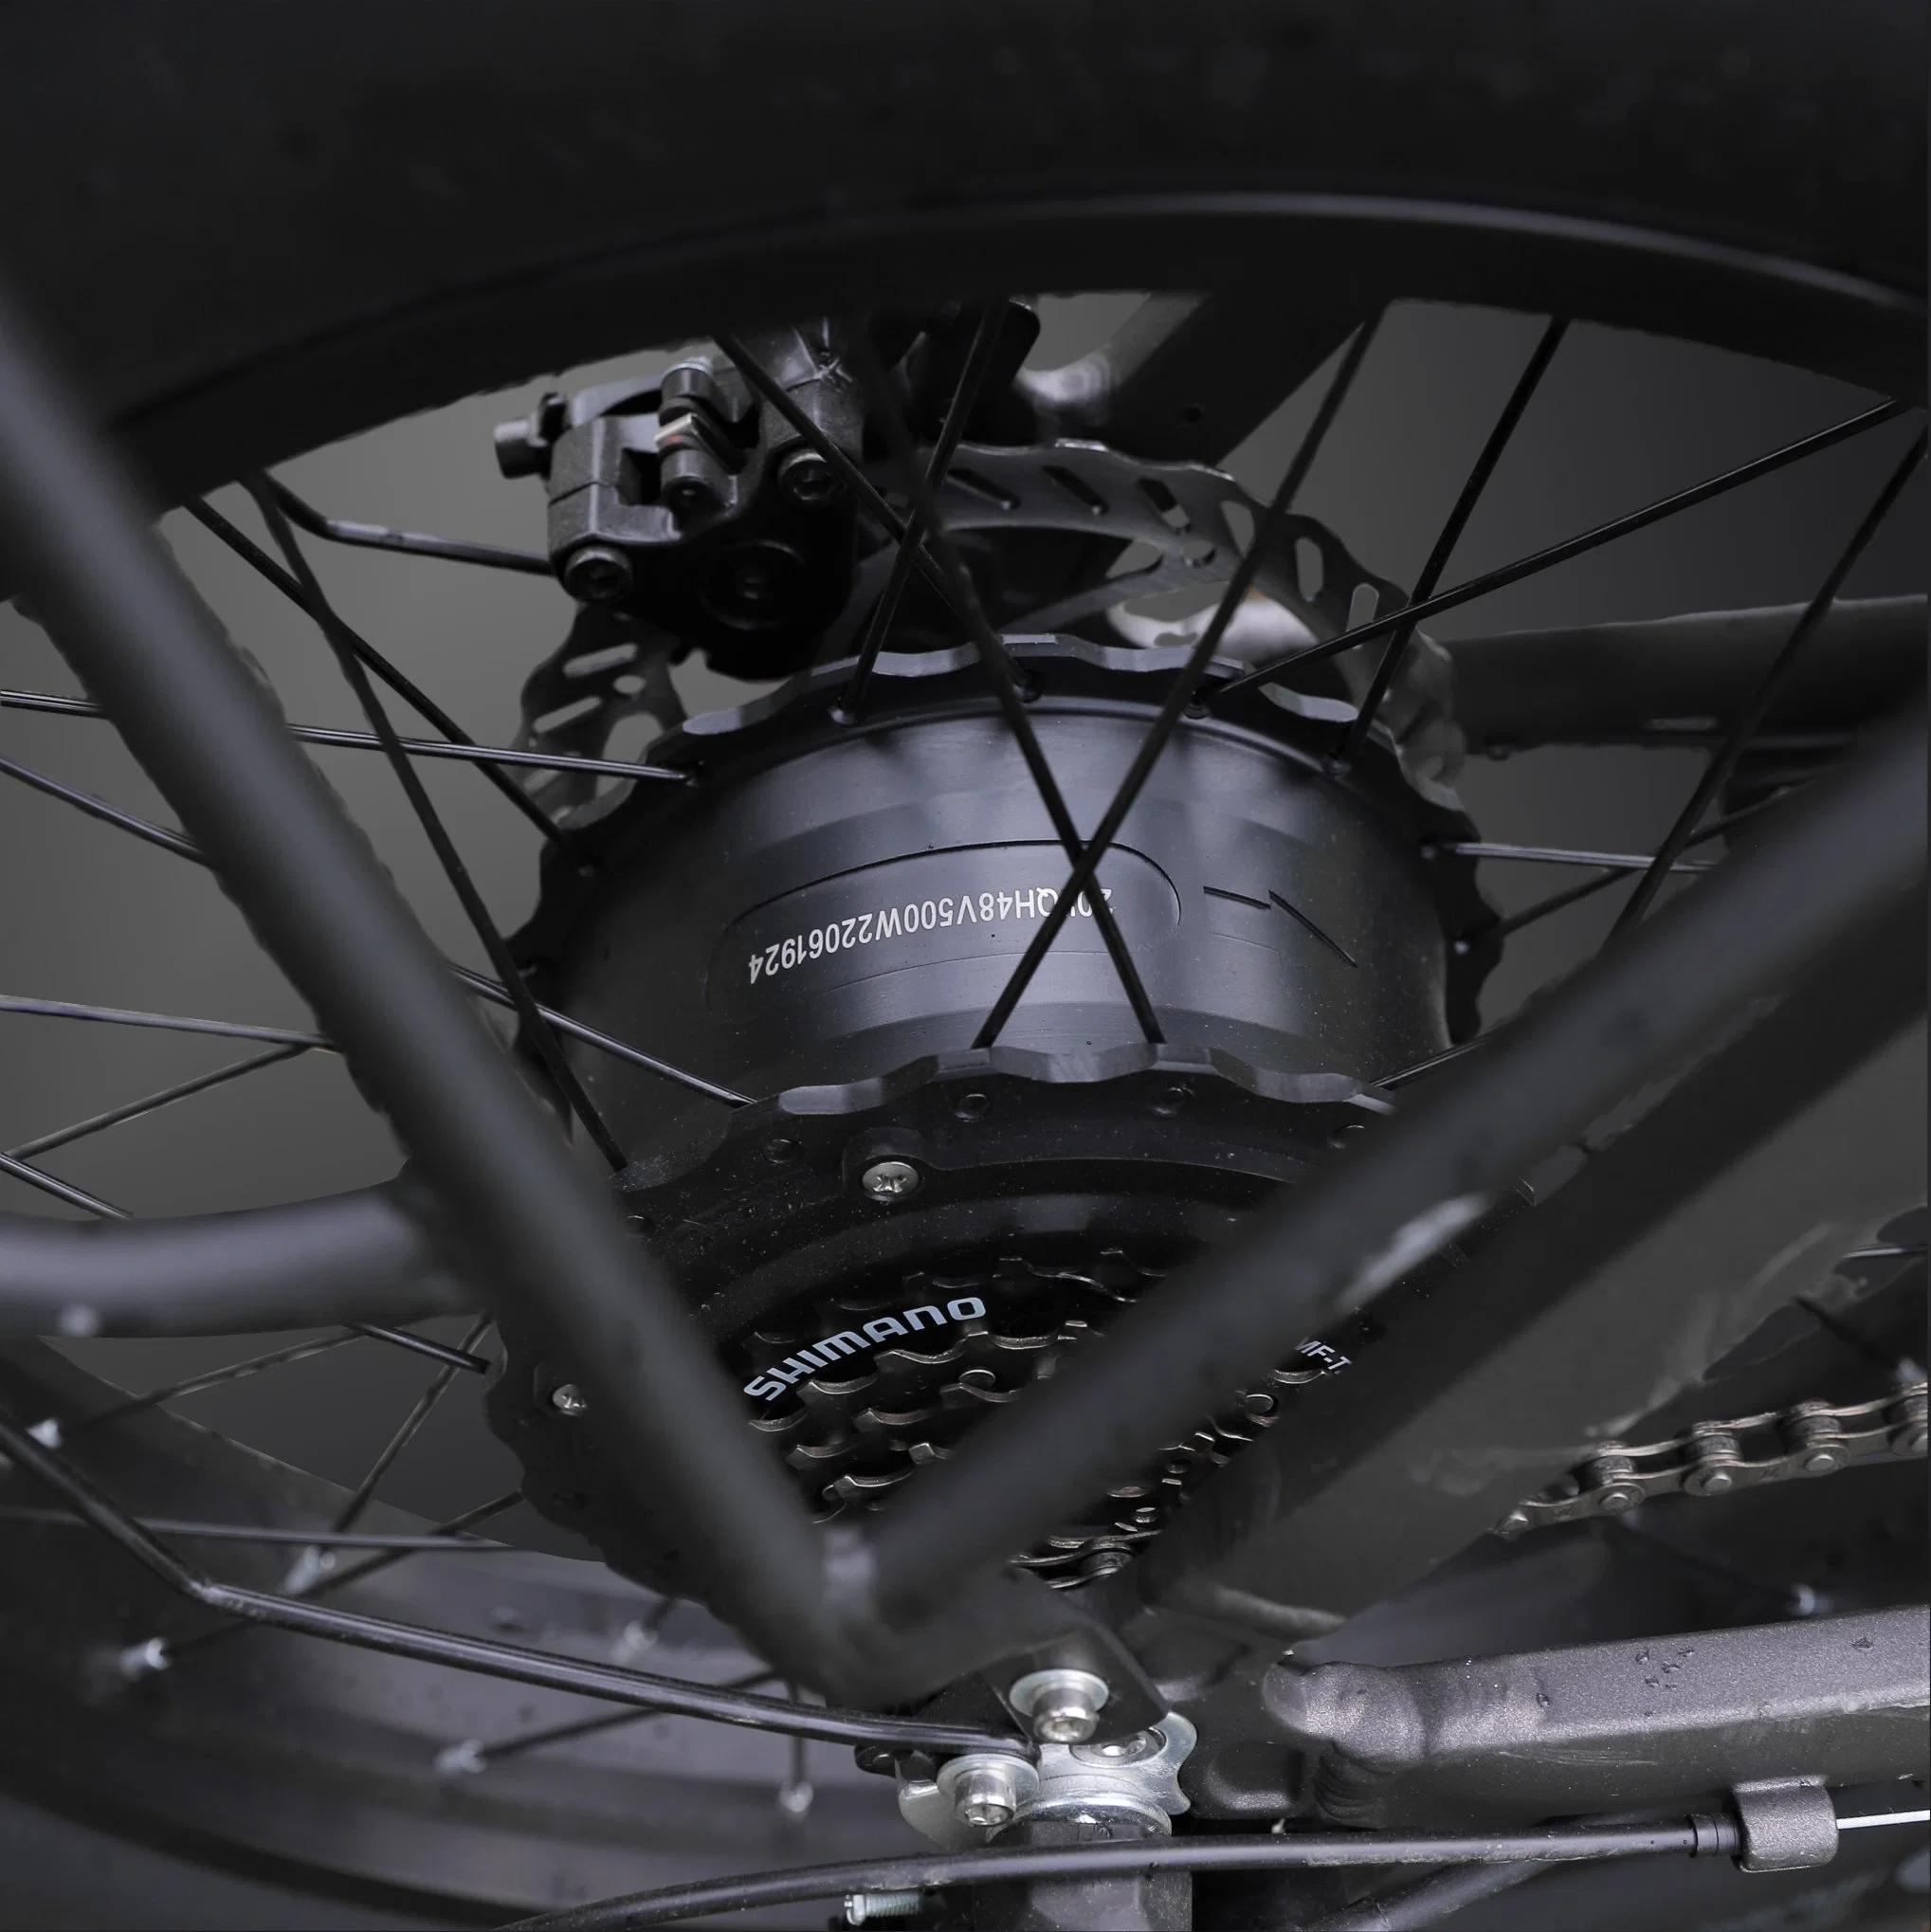 دراجة كهربائية مدينة قابلة للطي بعجلة 20 بوصة طراز جديد سرعة عالية محرك قوي دراجة كهربائية سعر أفضل دراجات جبلية كهربائية